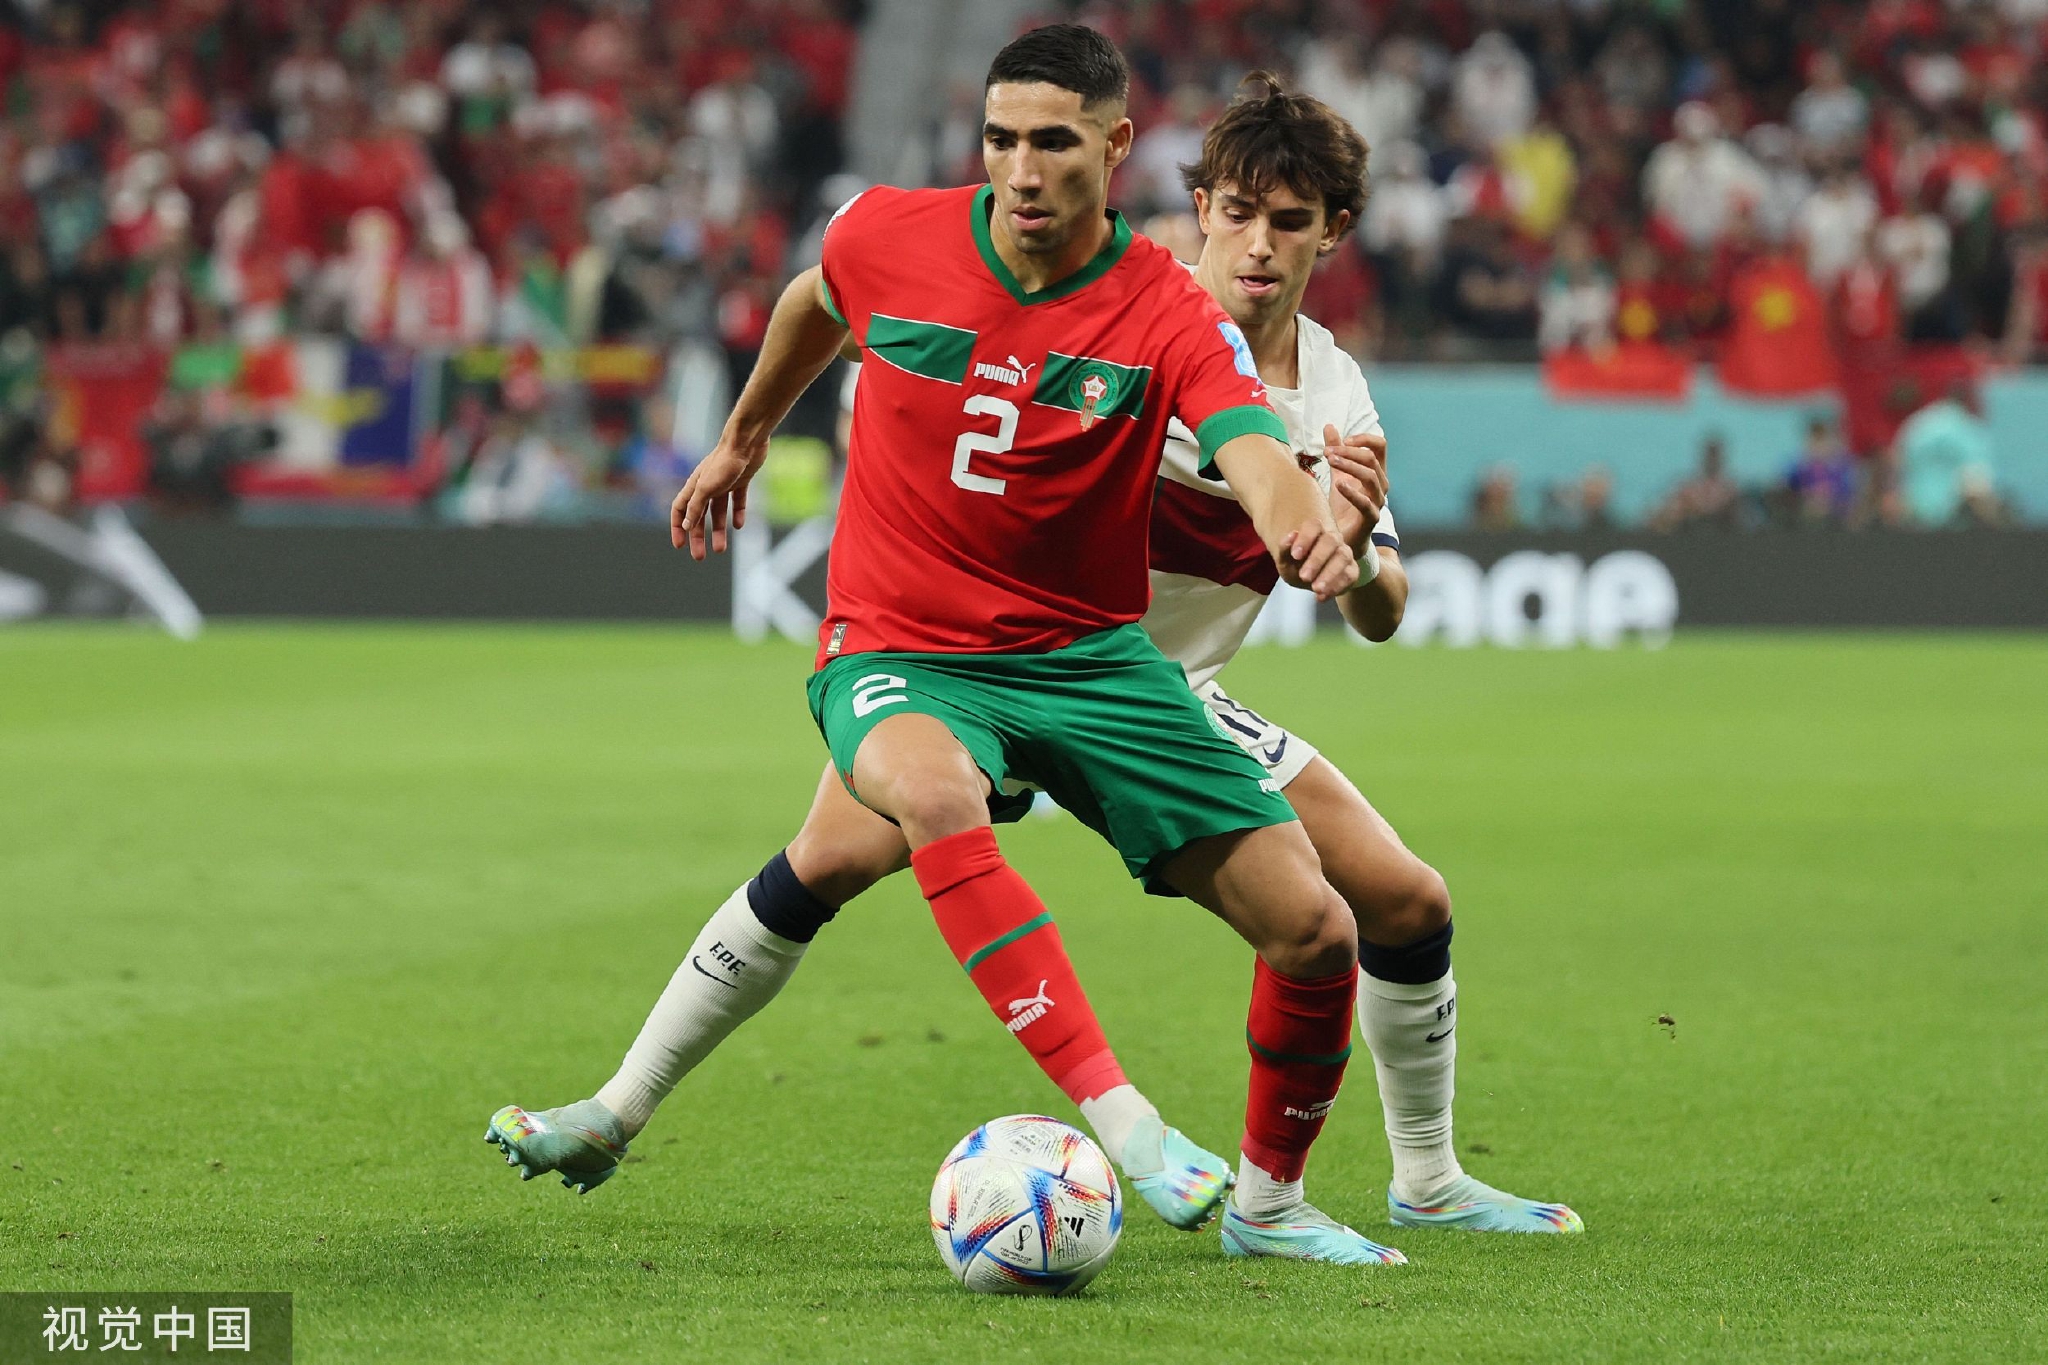 阿什拉夫是摩洛哥攻防两端的核心球员。